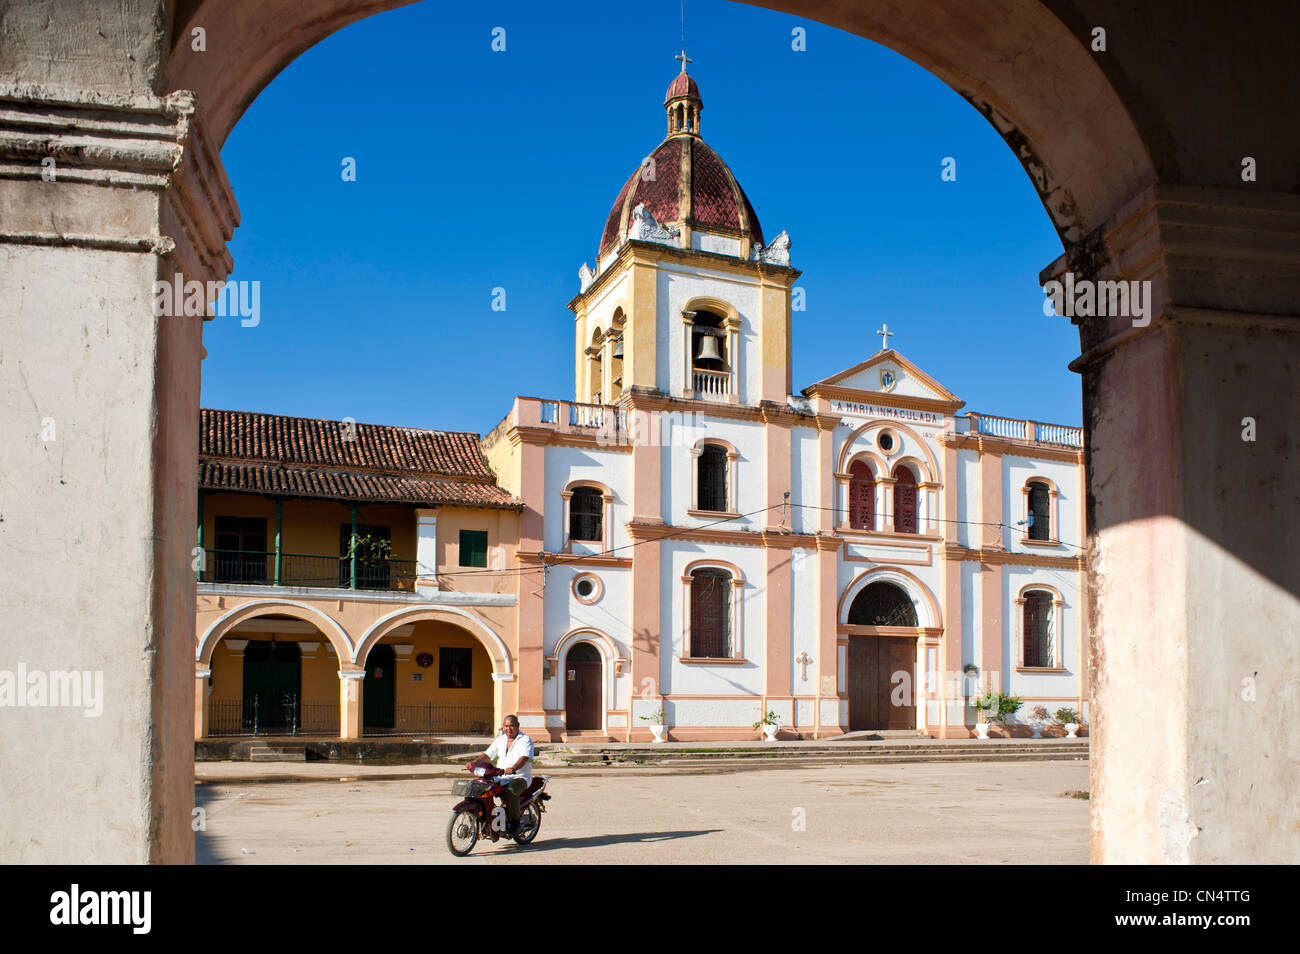 La Colombie, Département de Bolivar, Mompox (ou Mompos), ville fondée en 1540 et classée au Patrimoine Mondial de l'UNESCO, la Concepcion Banque D'Images